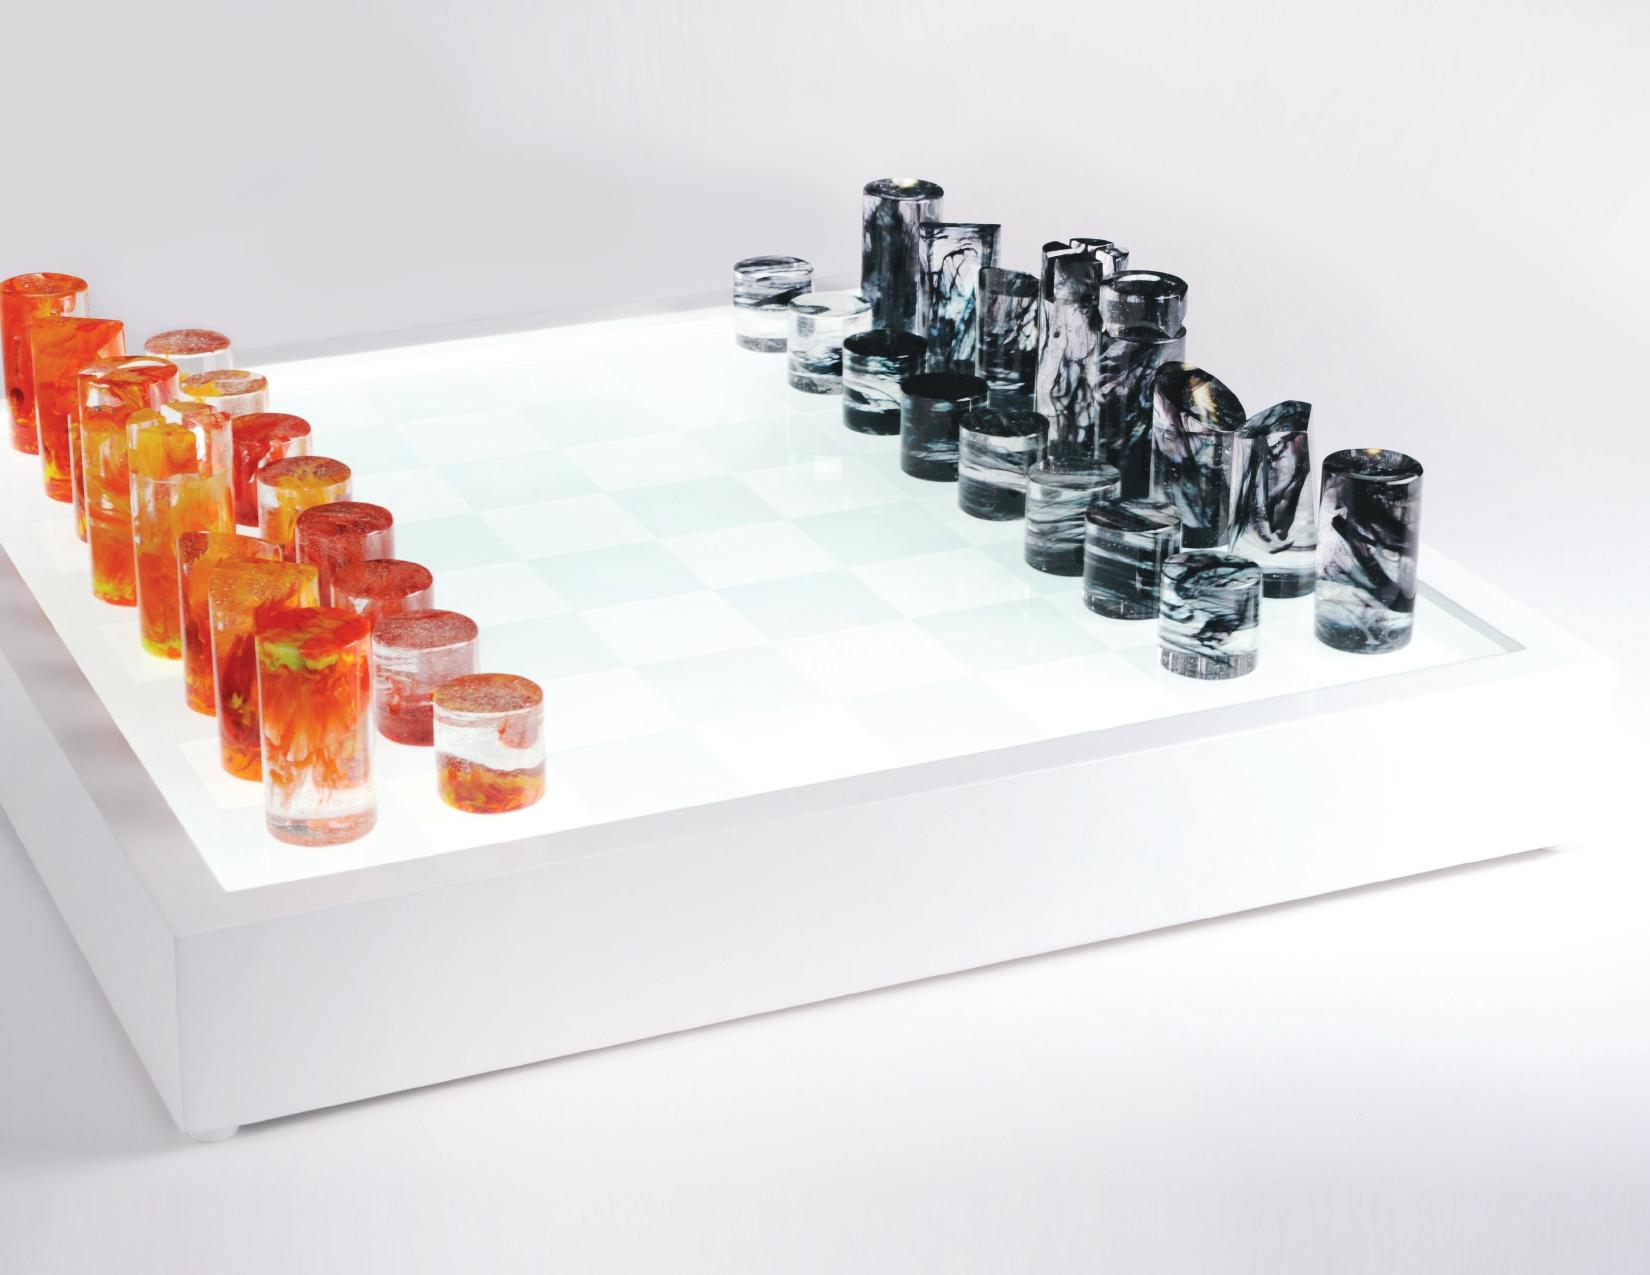 Ce jeu d'échecs appartient à la collection Jeux de société conçue par Orfeo Quagliata.

Techniques exclusives de l'artiste. 100% fait à la main avec des matériaux de la plus haute qualité. Les pièces d'échecs fabriquées selon la technique du verre